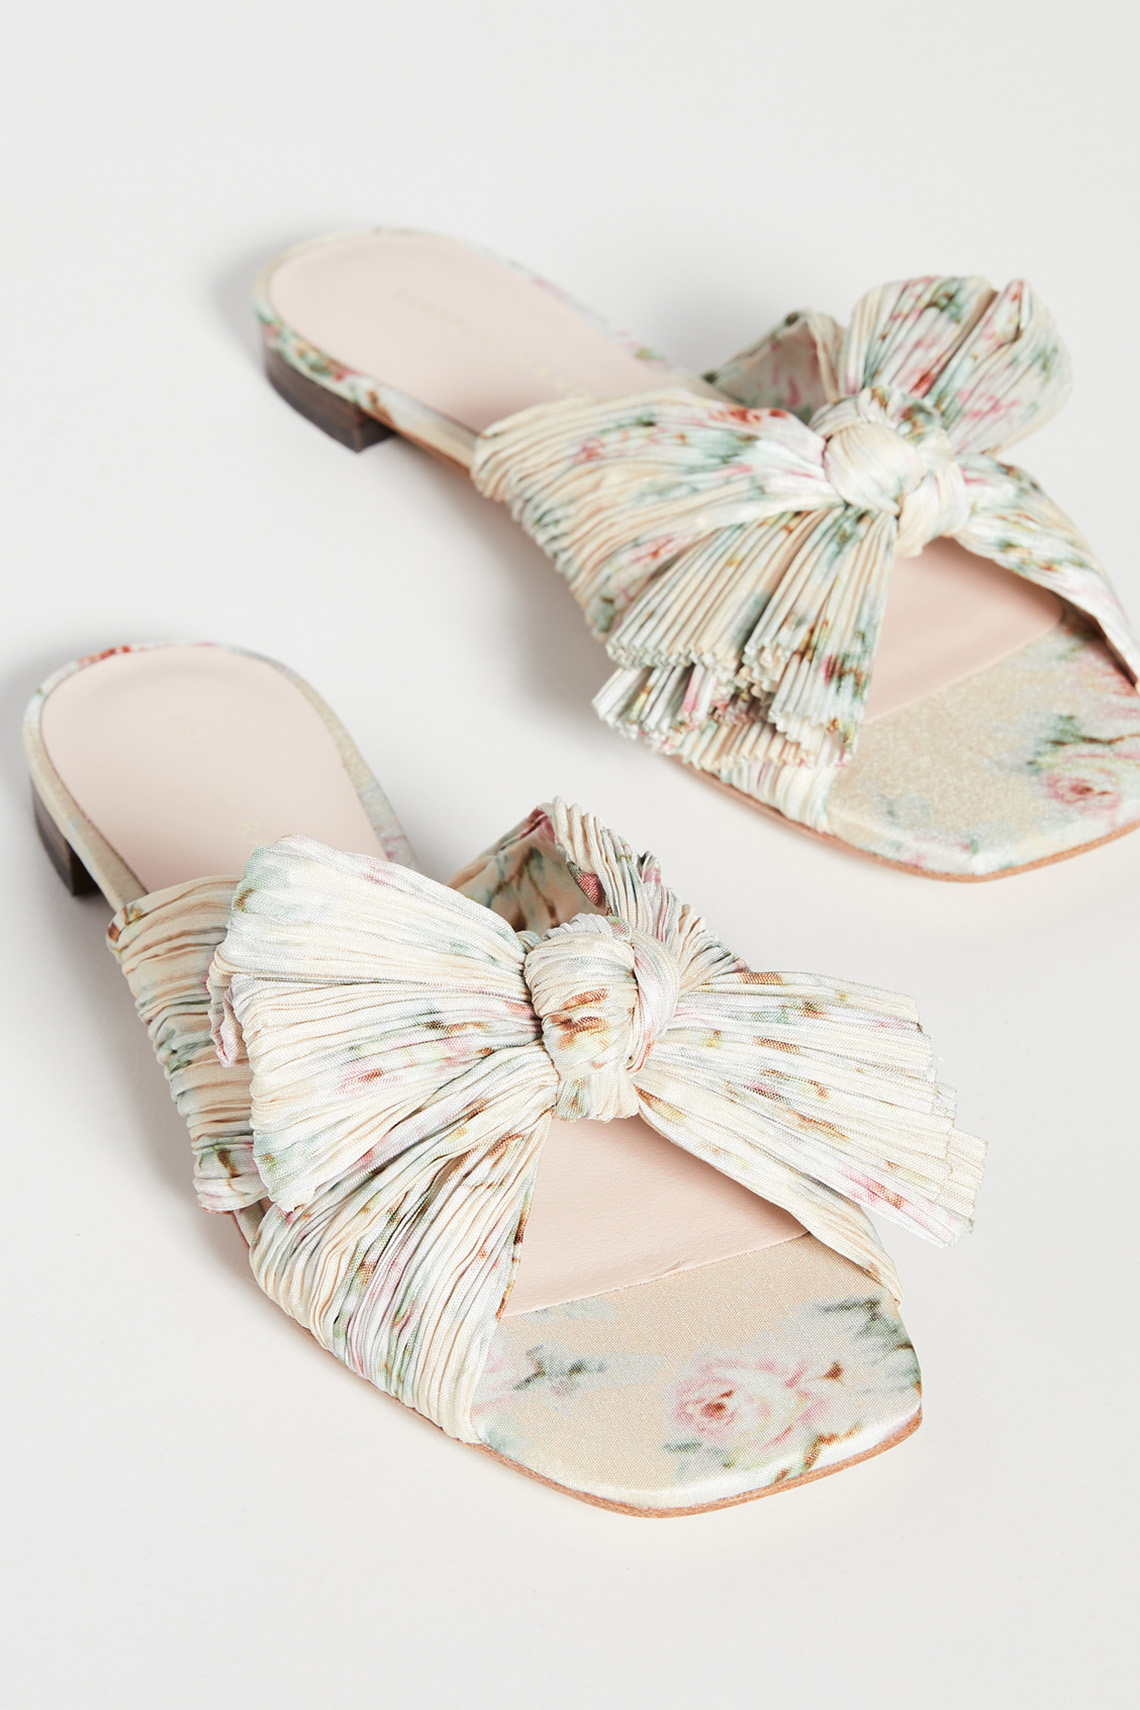 Loeffler Randall Daphne Flat Sandals at ShopBop Flat Wedding Shoes Just As Chic As Heels Bridal Musings - 20 đôi giày cưới bằng phẳng (sang trọng như giày cao gót)